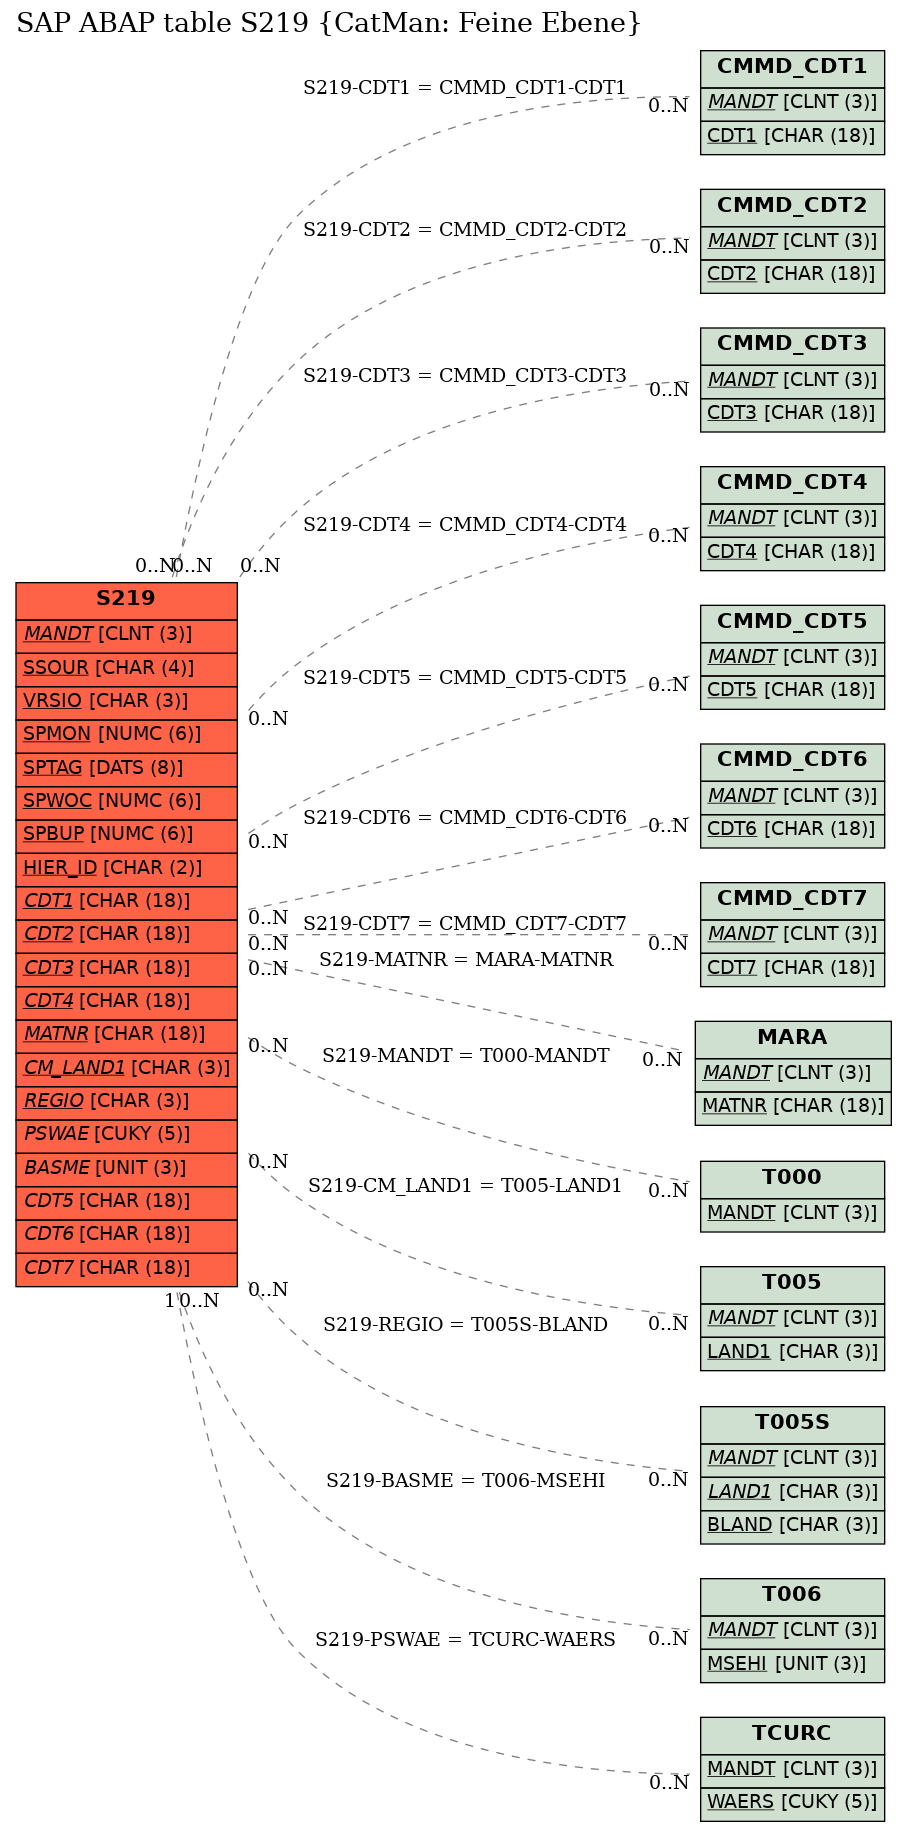 E-R Diagram for table S219 (CatMan: Feine Ebene)